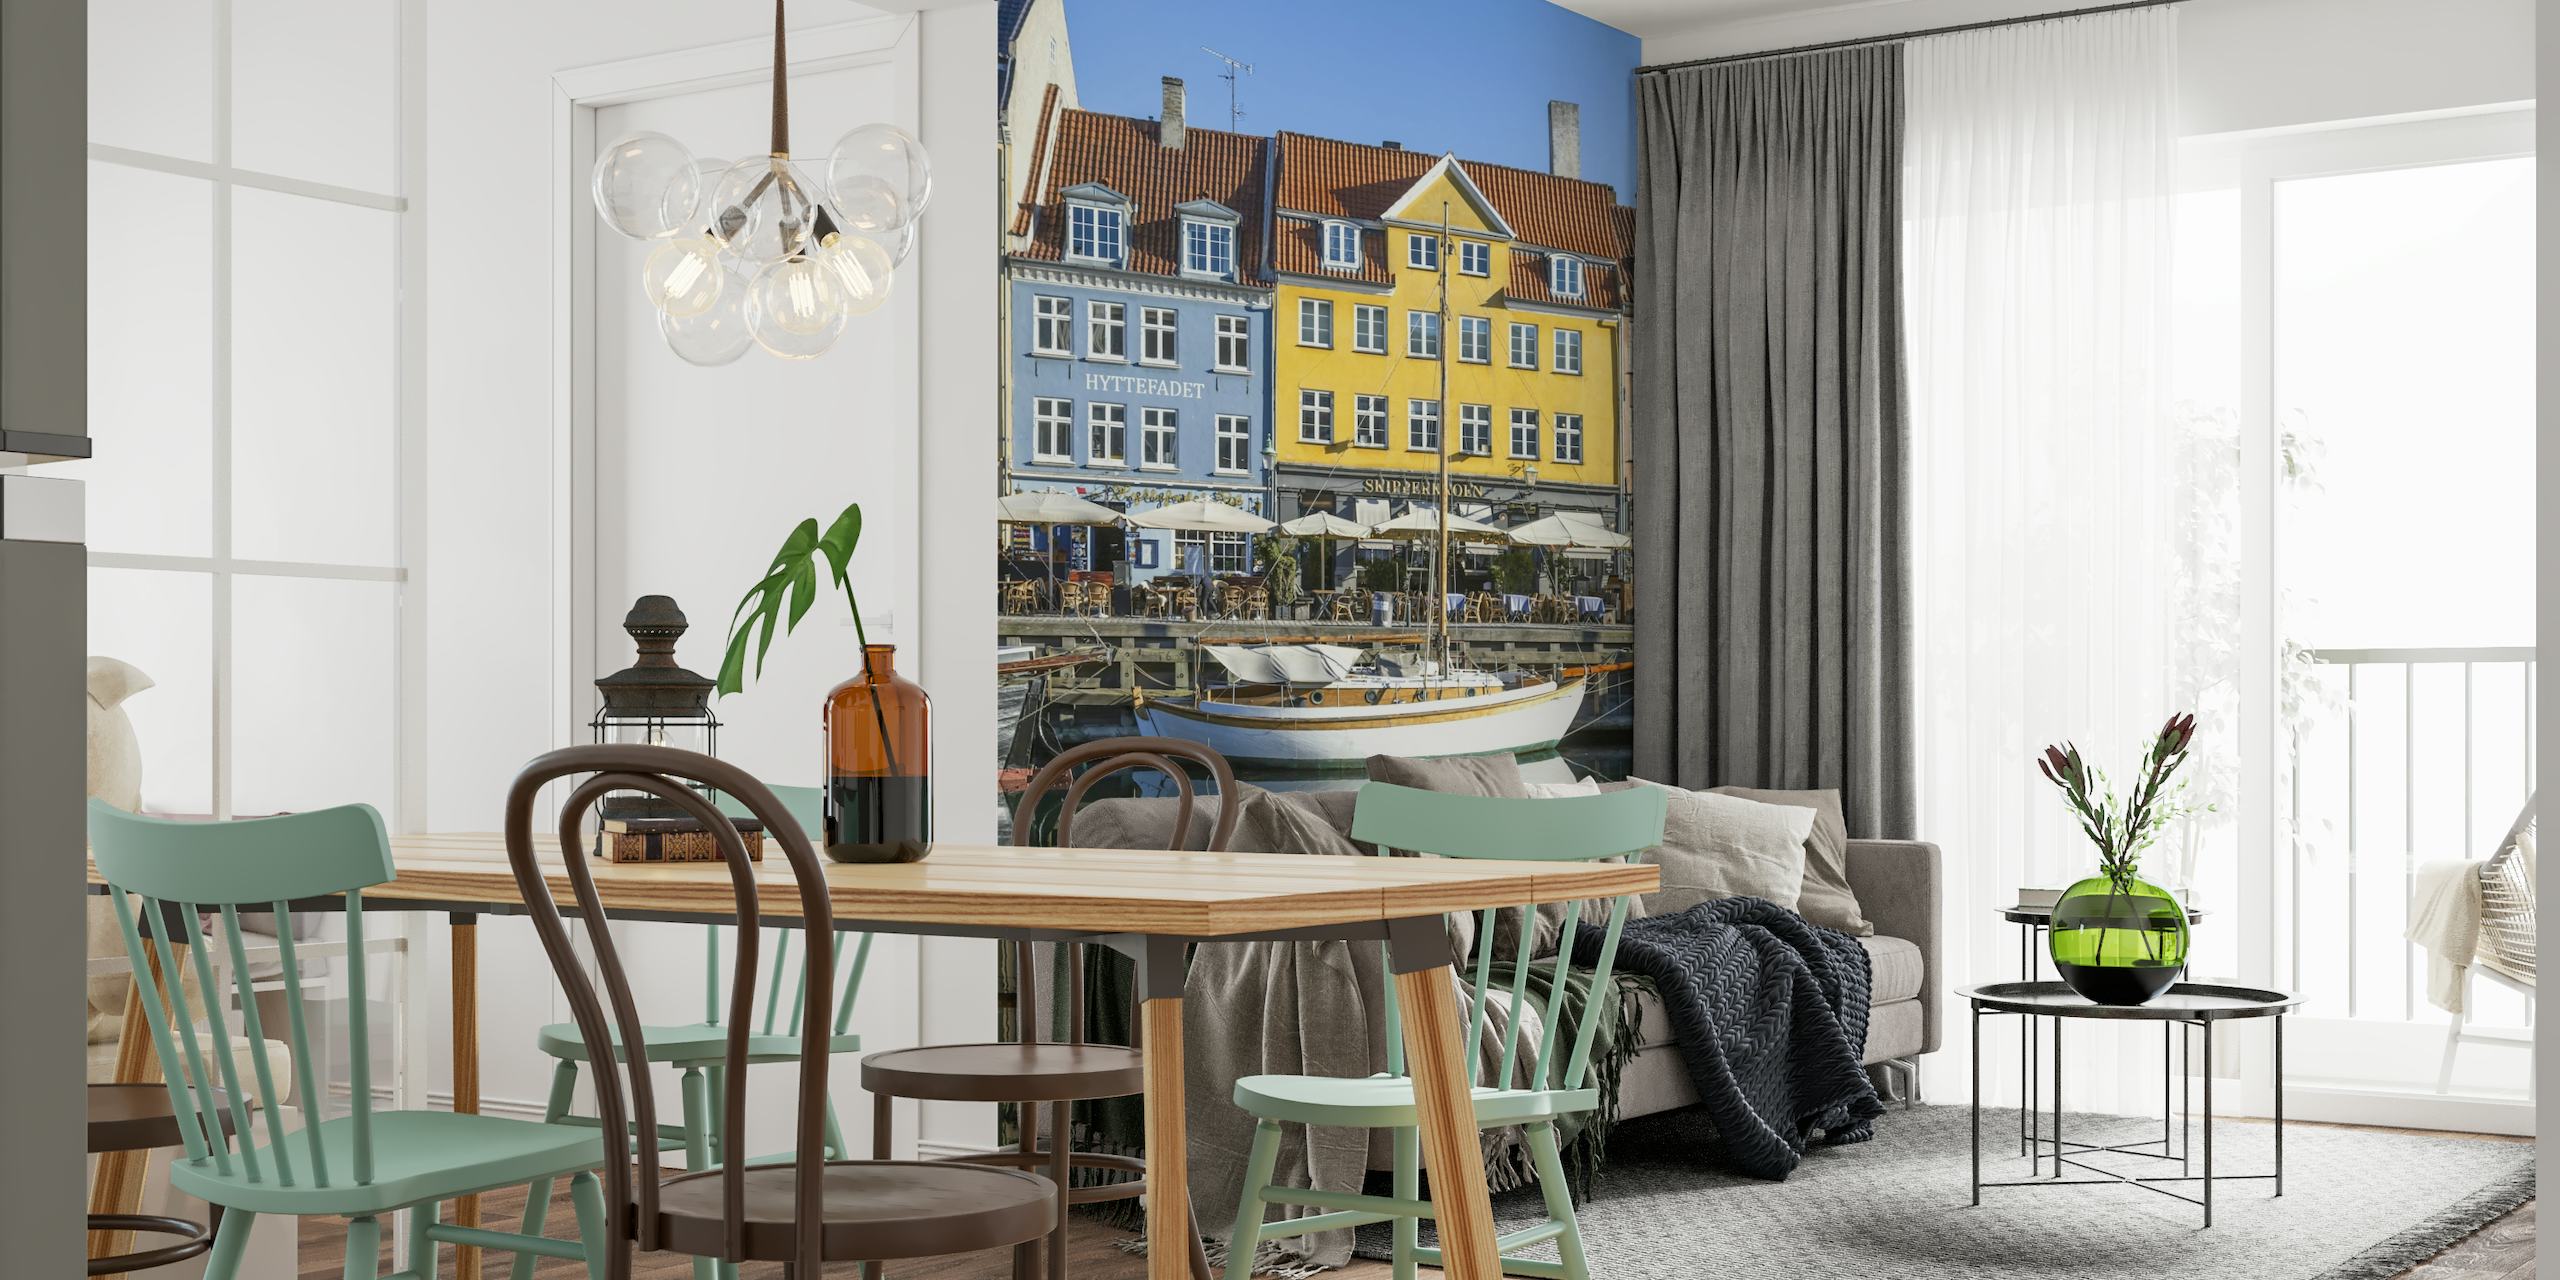 COPENHAGEN Quiet Nyhavn papel pintado